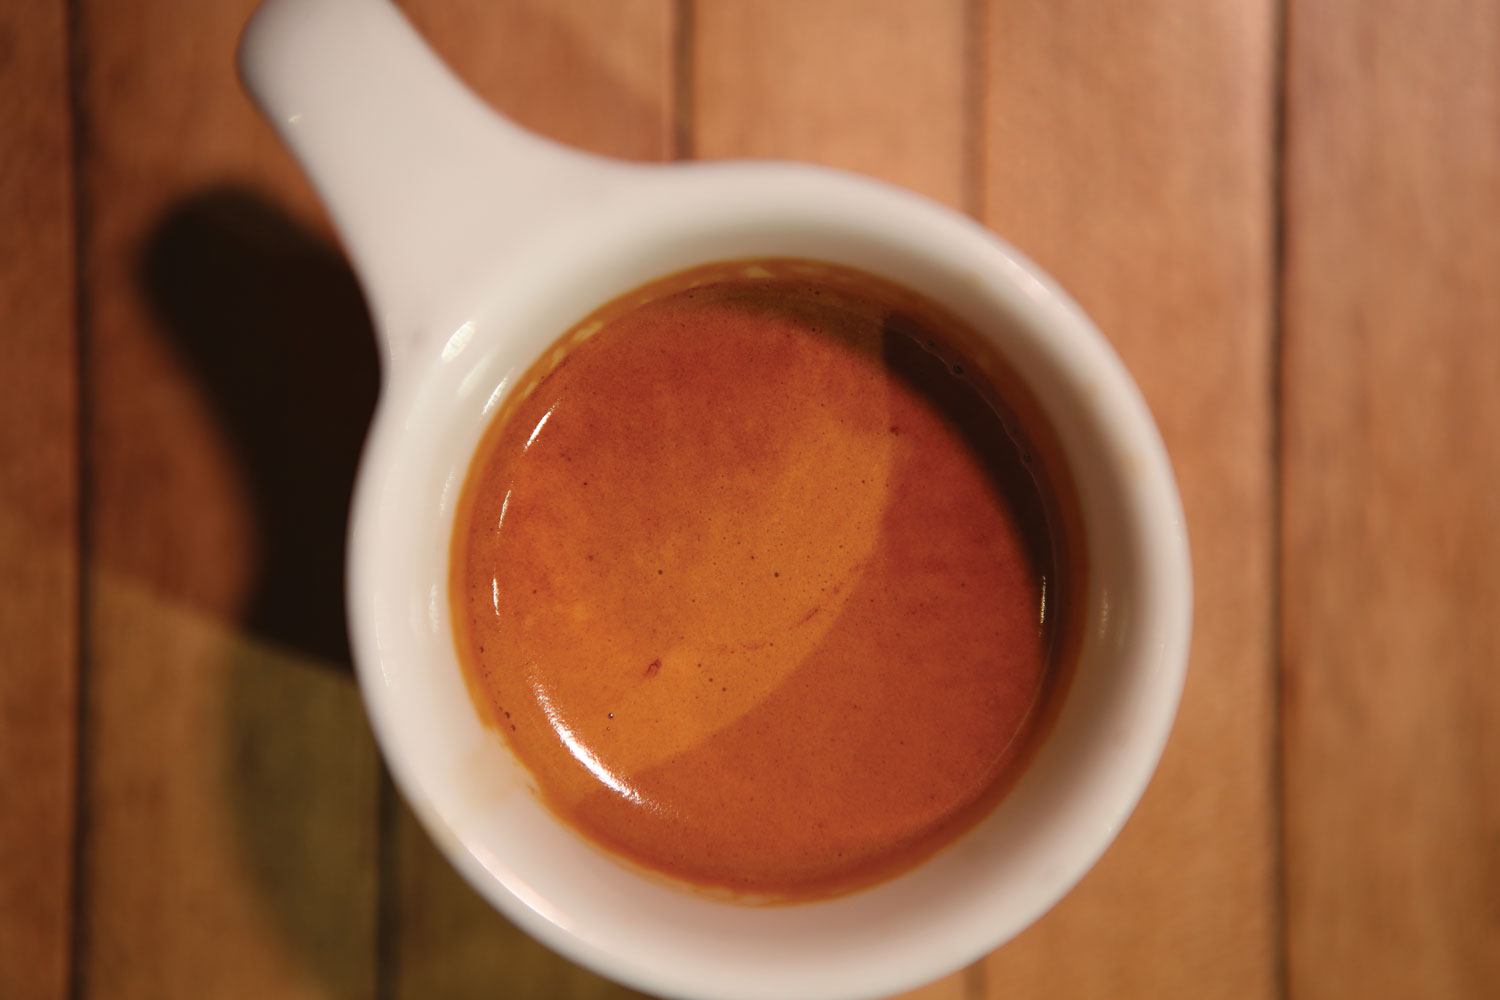 意式咖啡机意式咖啡壶美式咖啡和意式咖啡特点8.jpg